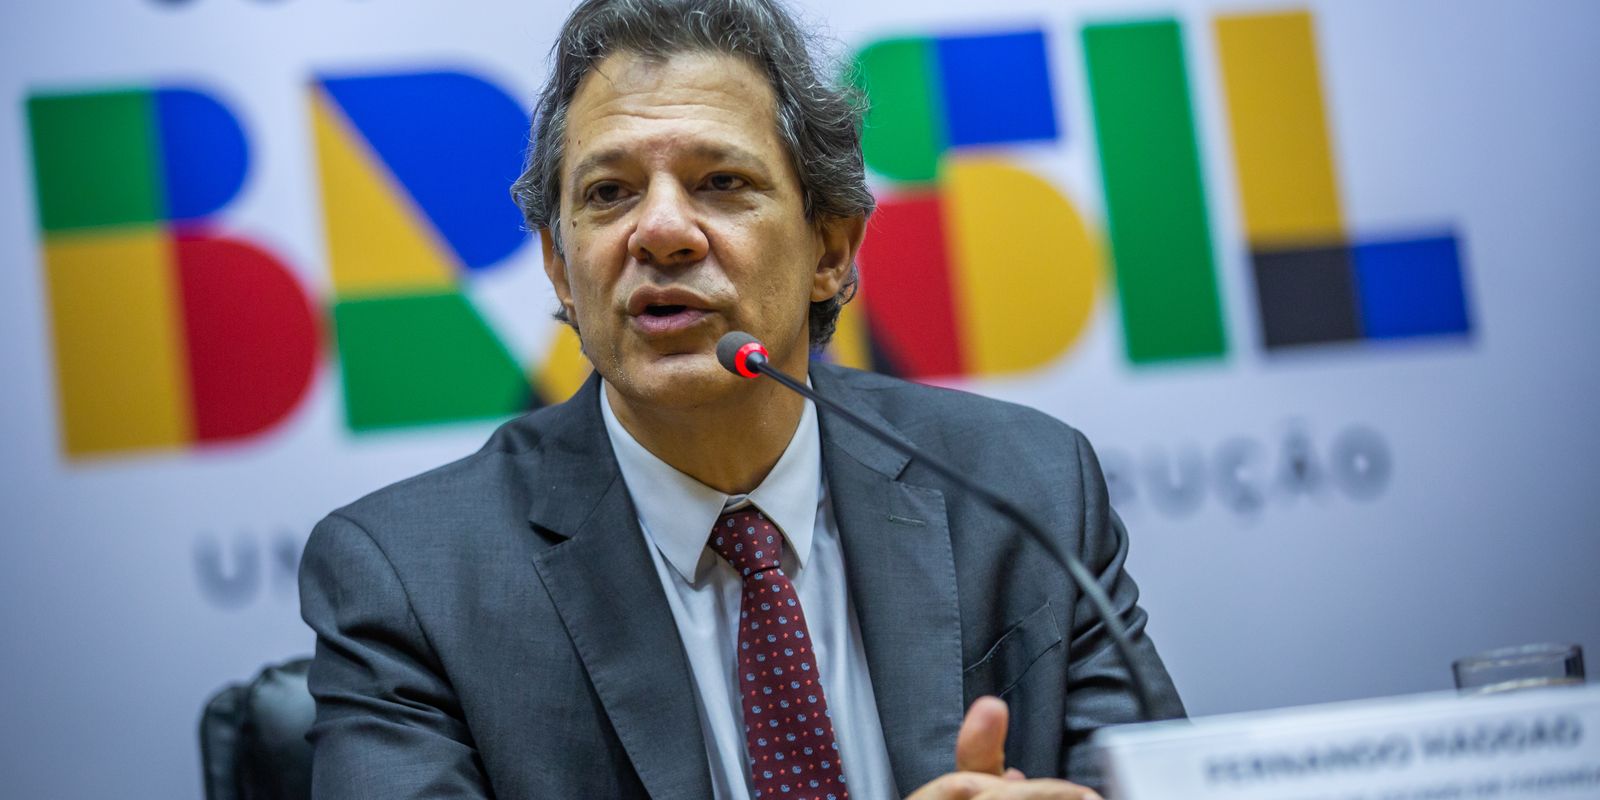 Receita investigou aumento de compensações tributárias, diz Haddad – finanças brasil